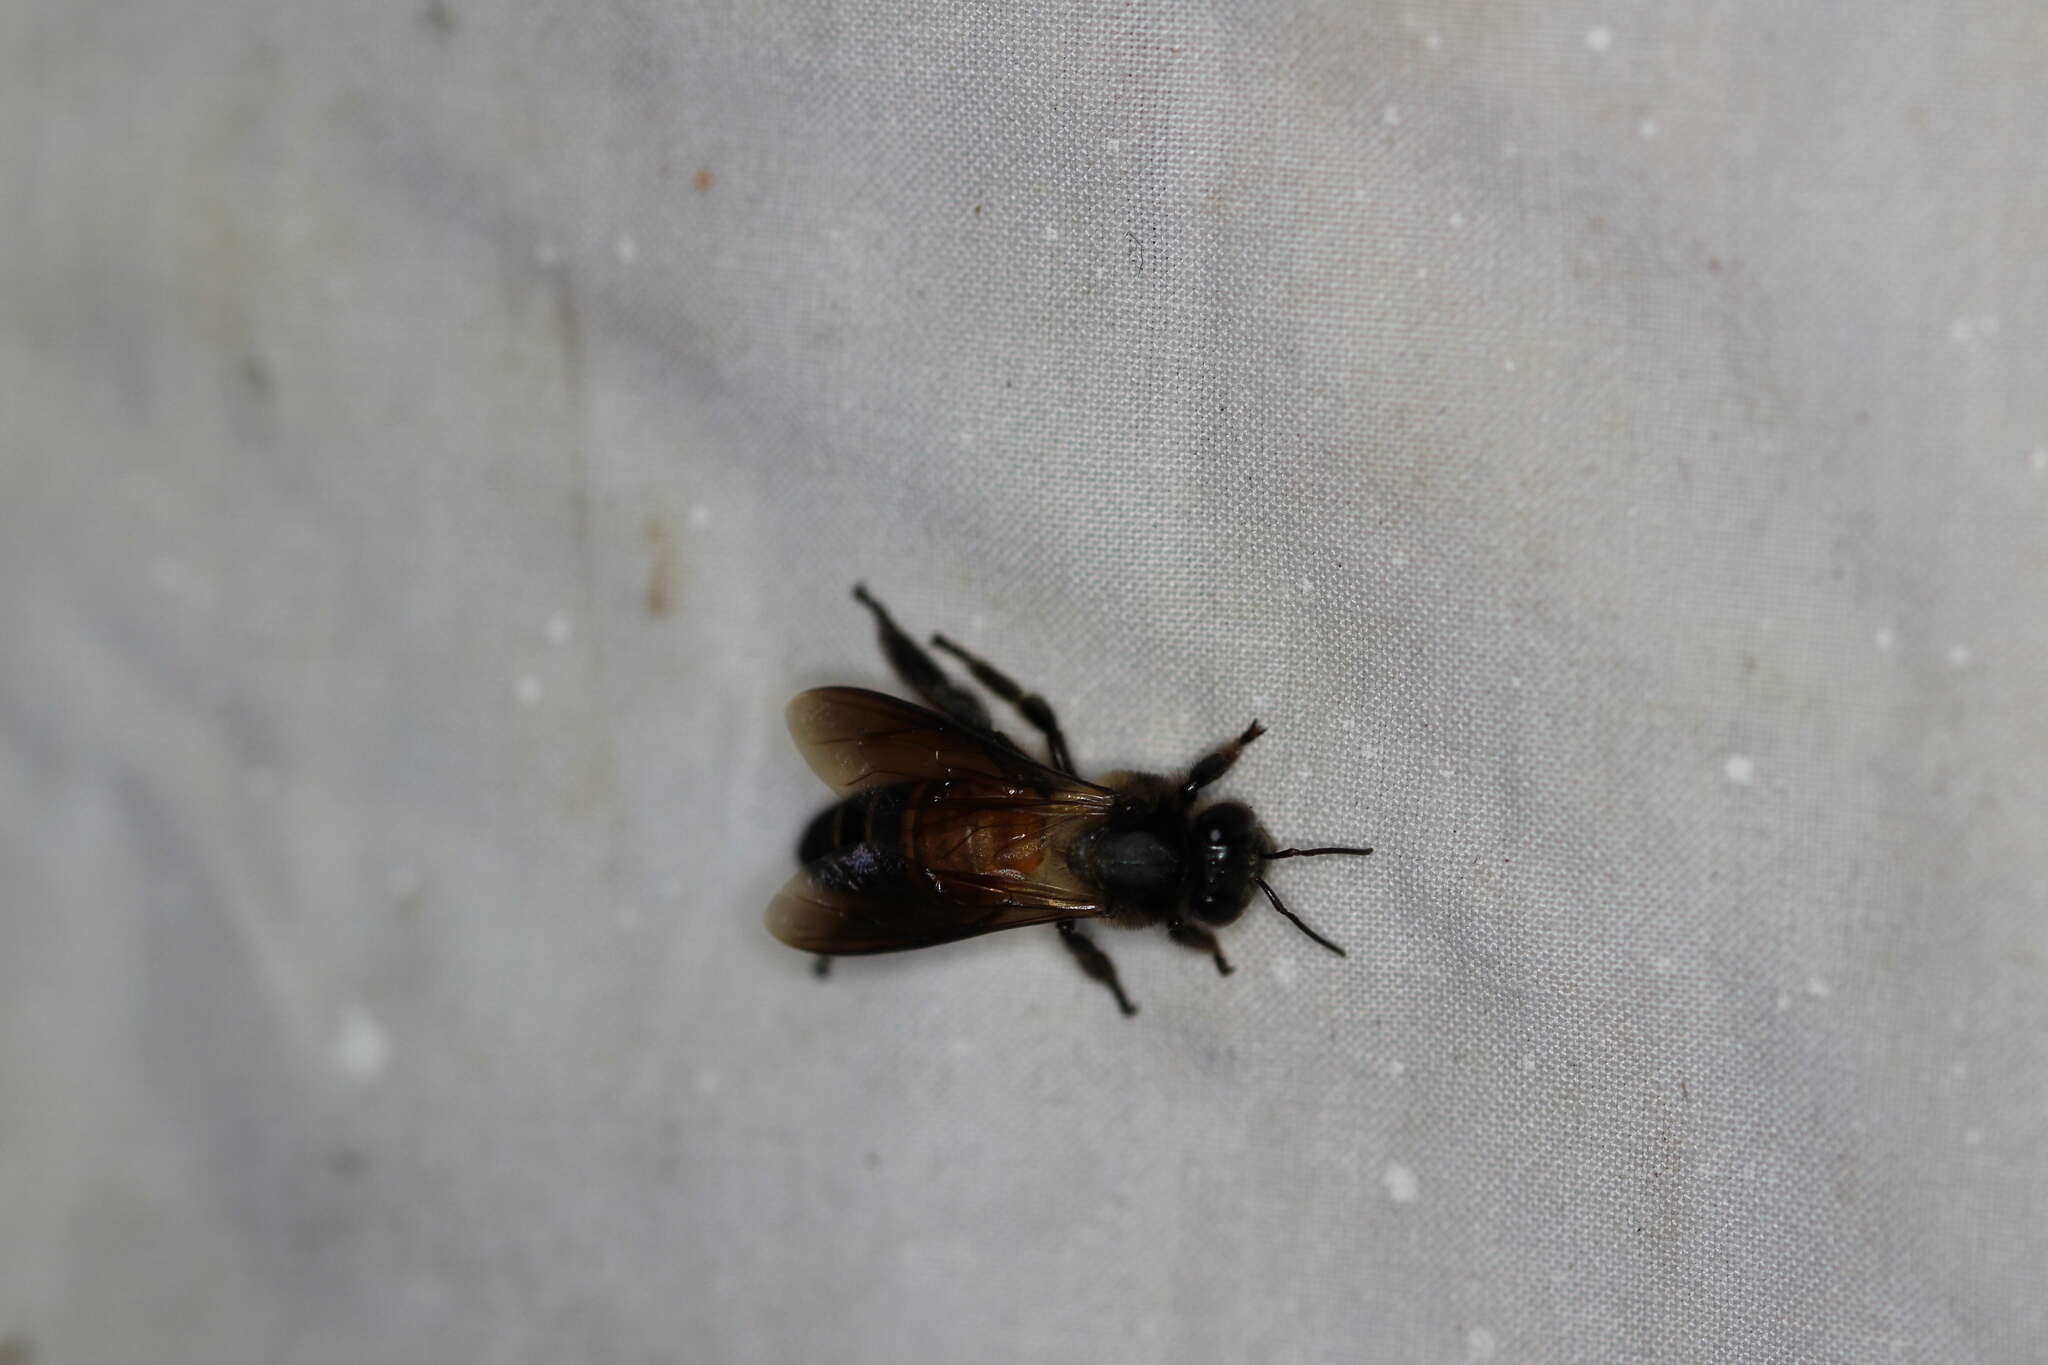 Image of Giant honey bee